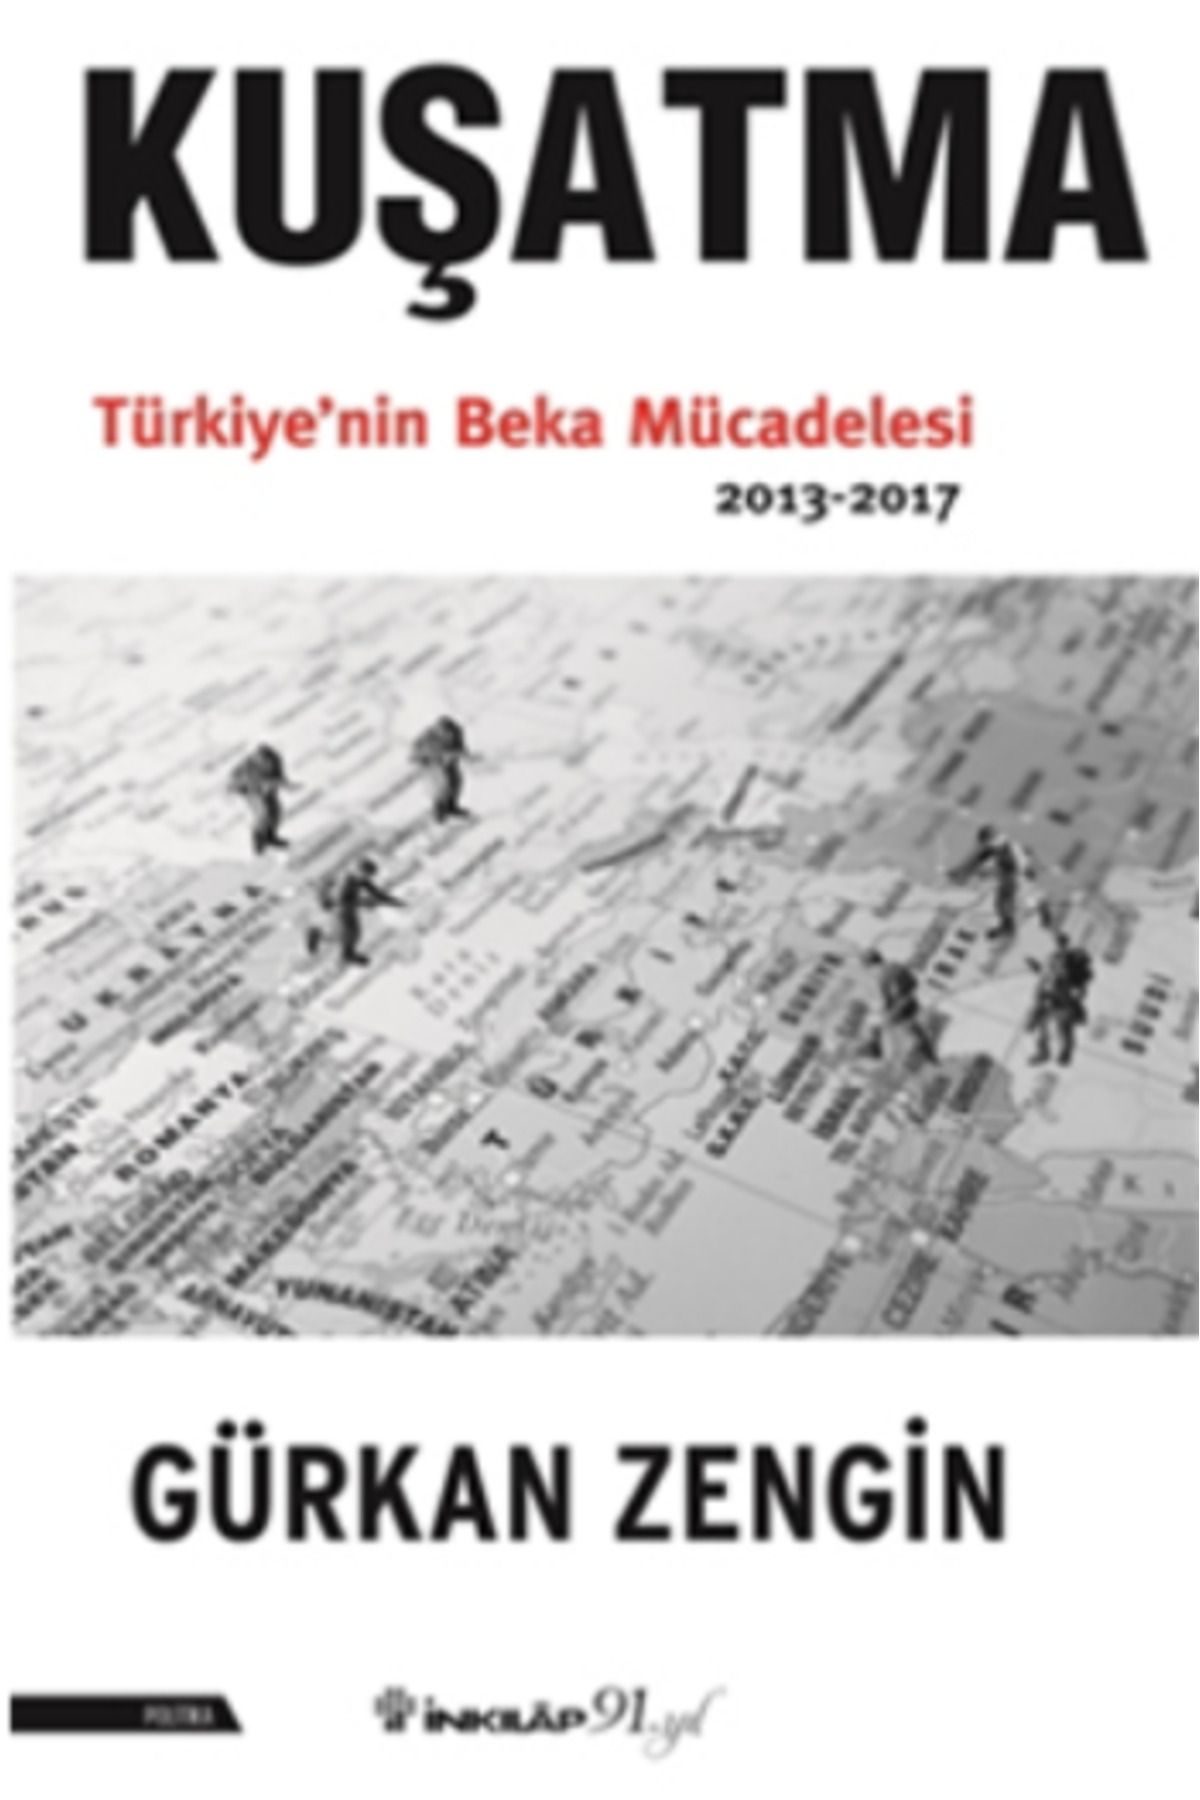 İnkılap Kitabevi Kuşatma Türkiye'nin Beka Mücadelesi 2013-2017 kitabı - Gürkan Zengin - İnkılap Kitabevi